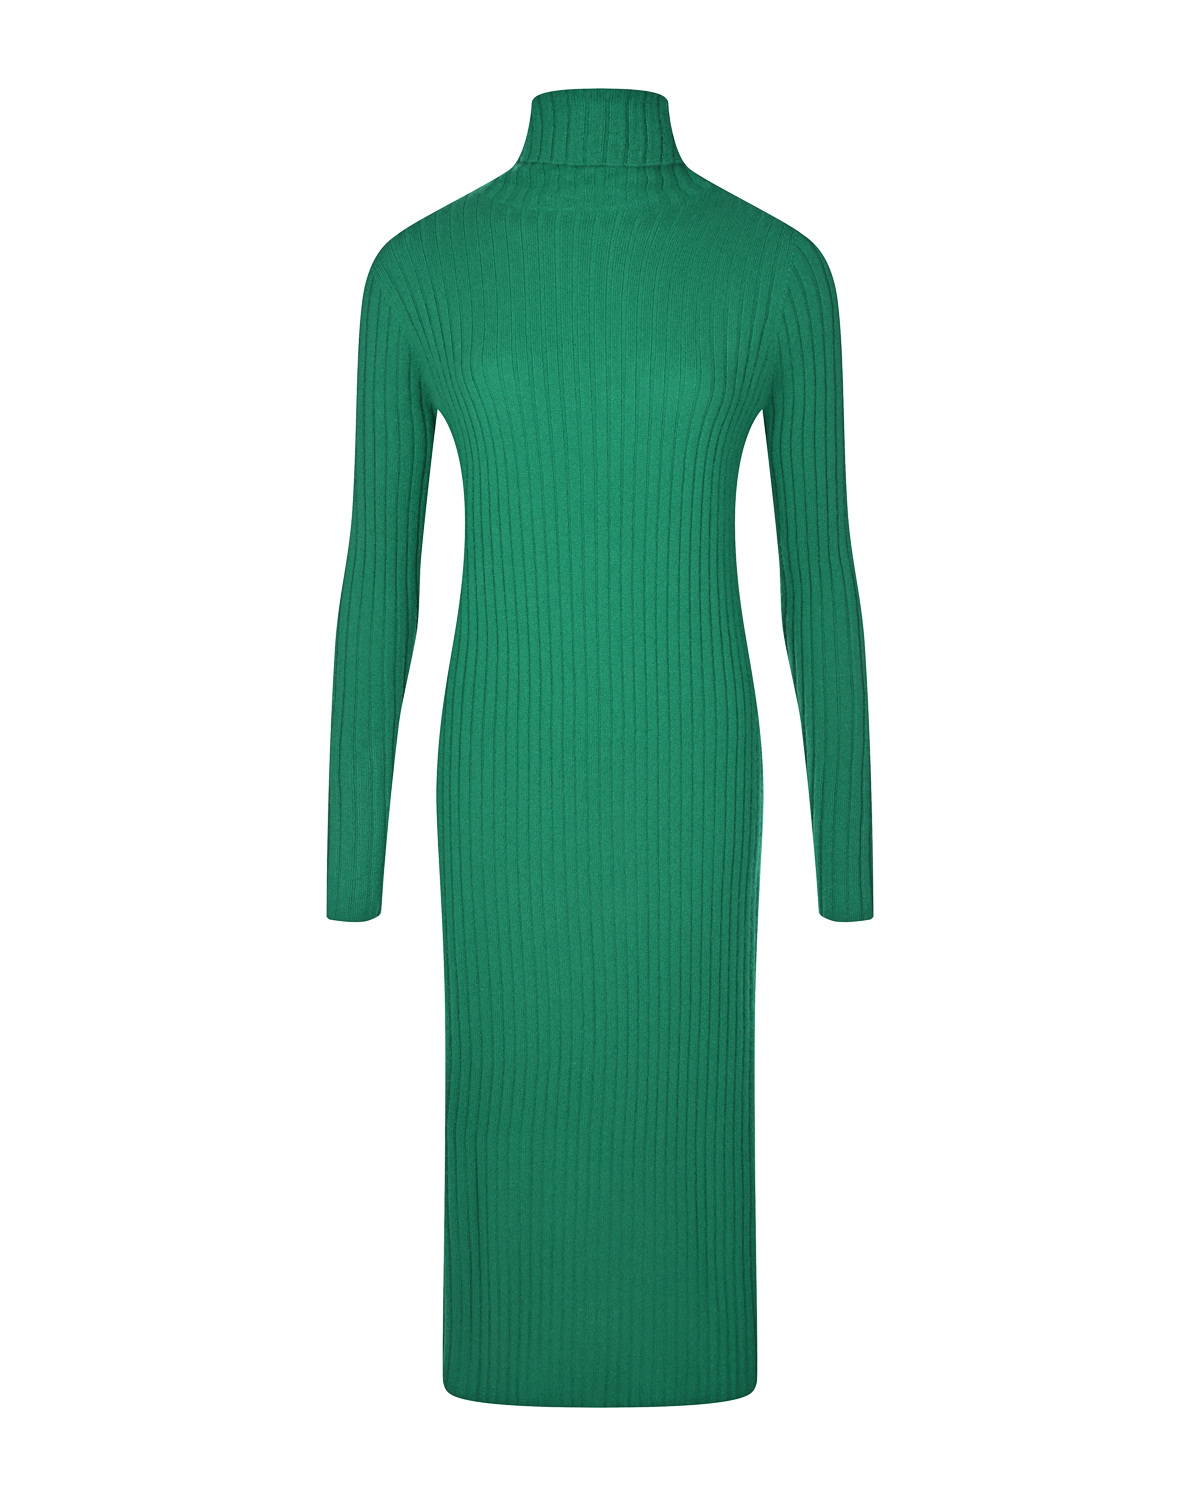 Платье из кашемира зеленого цвета Allude, размер 38 - фото 1